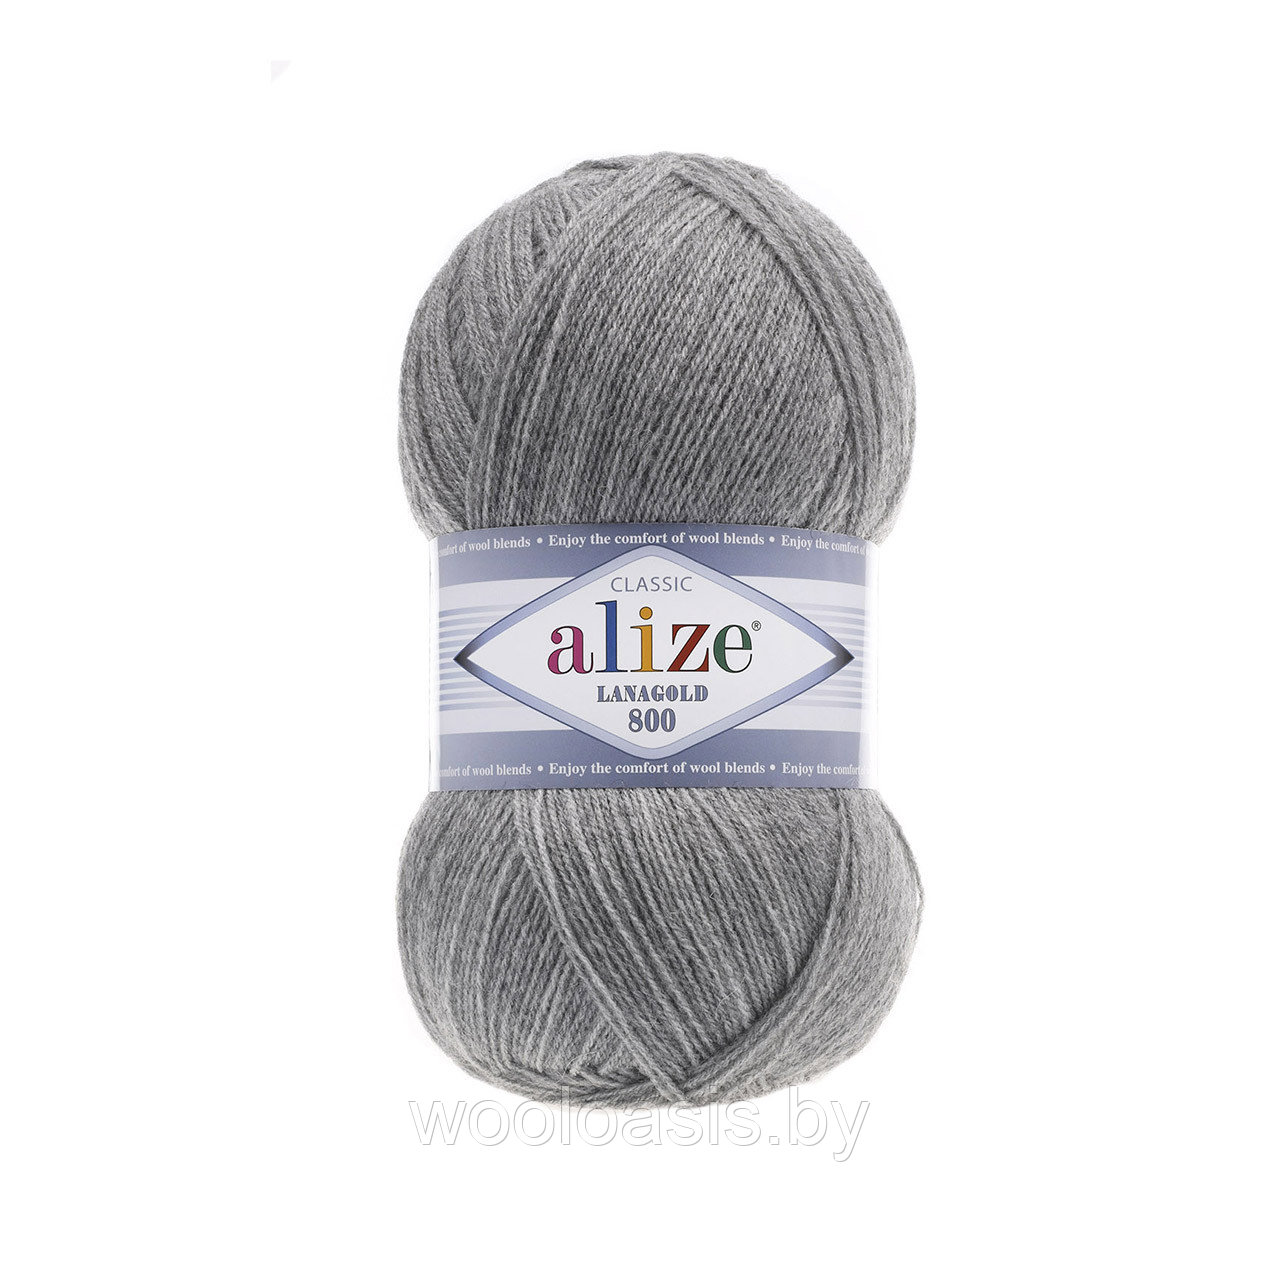 Пряжа Alize Lanagold 800, Ализе Ланаголд 800, турецкая, шерсть с акрилом, для ручного вязания (цвет 21)